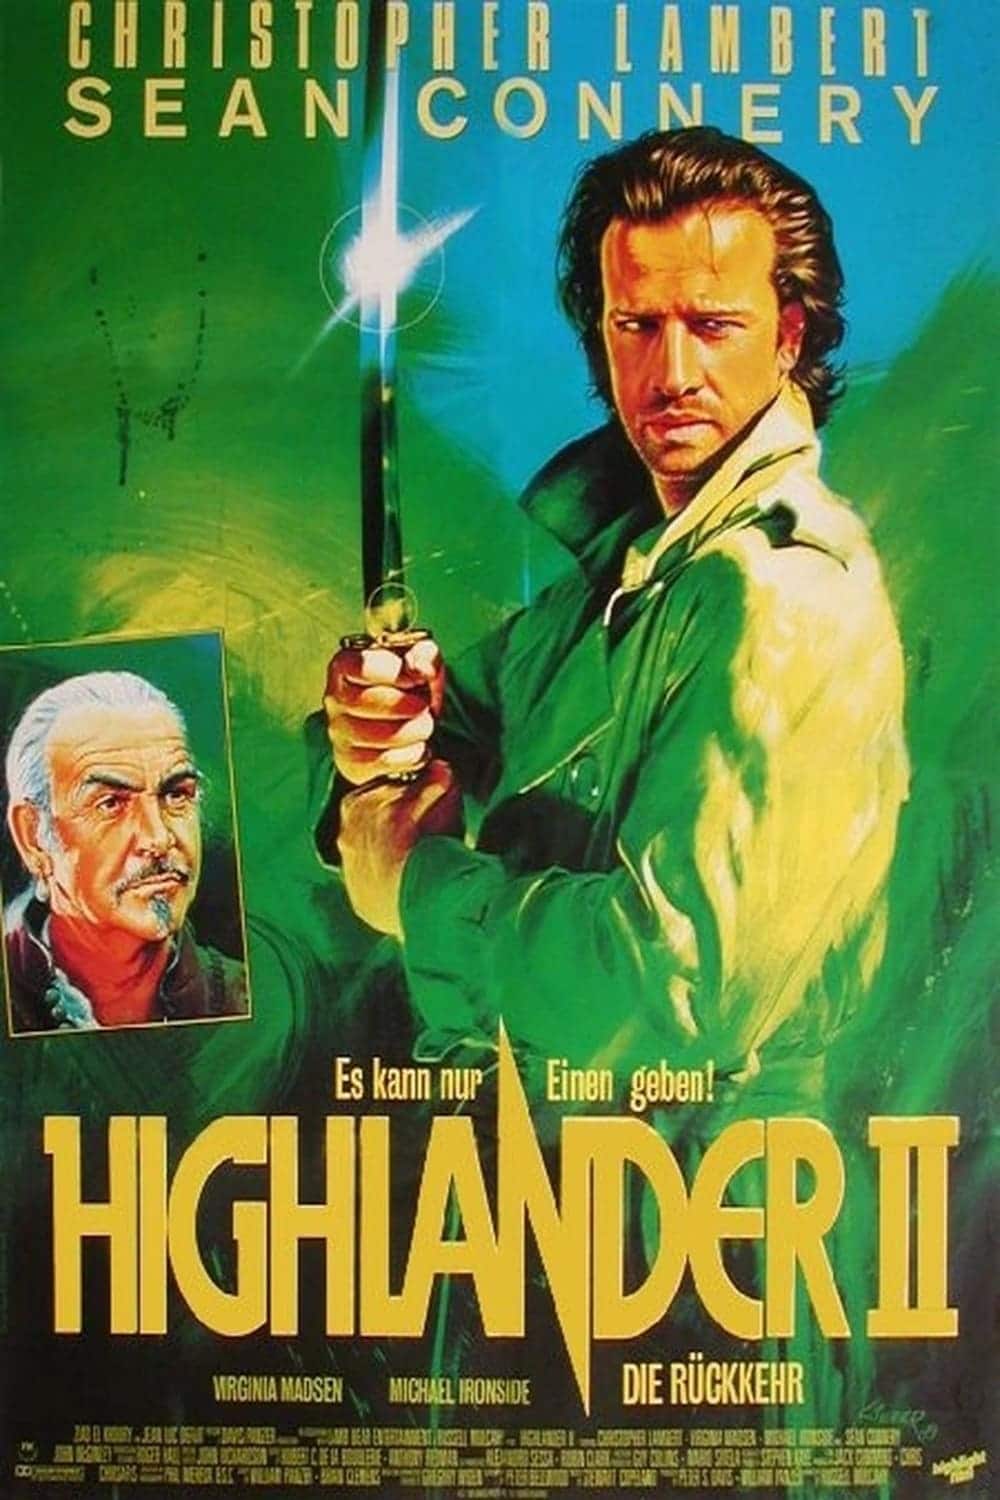 Plakat von "Highlander II - Die Rückkehr"